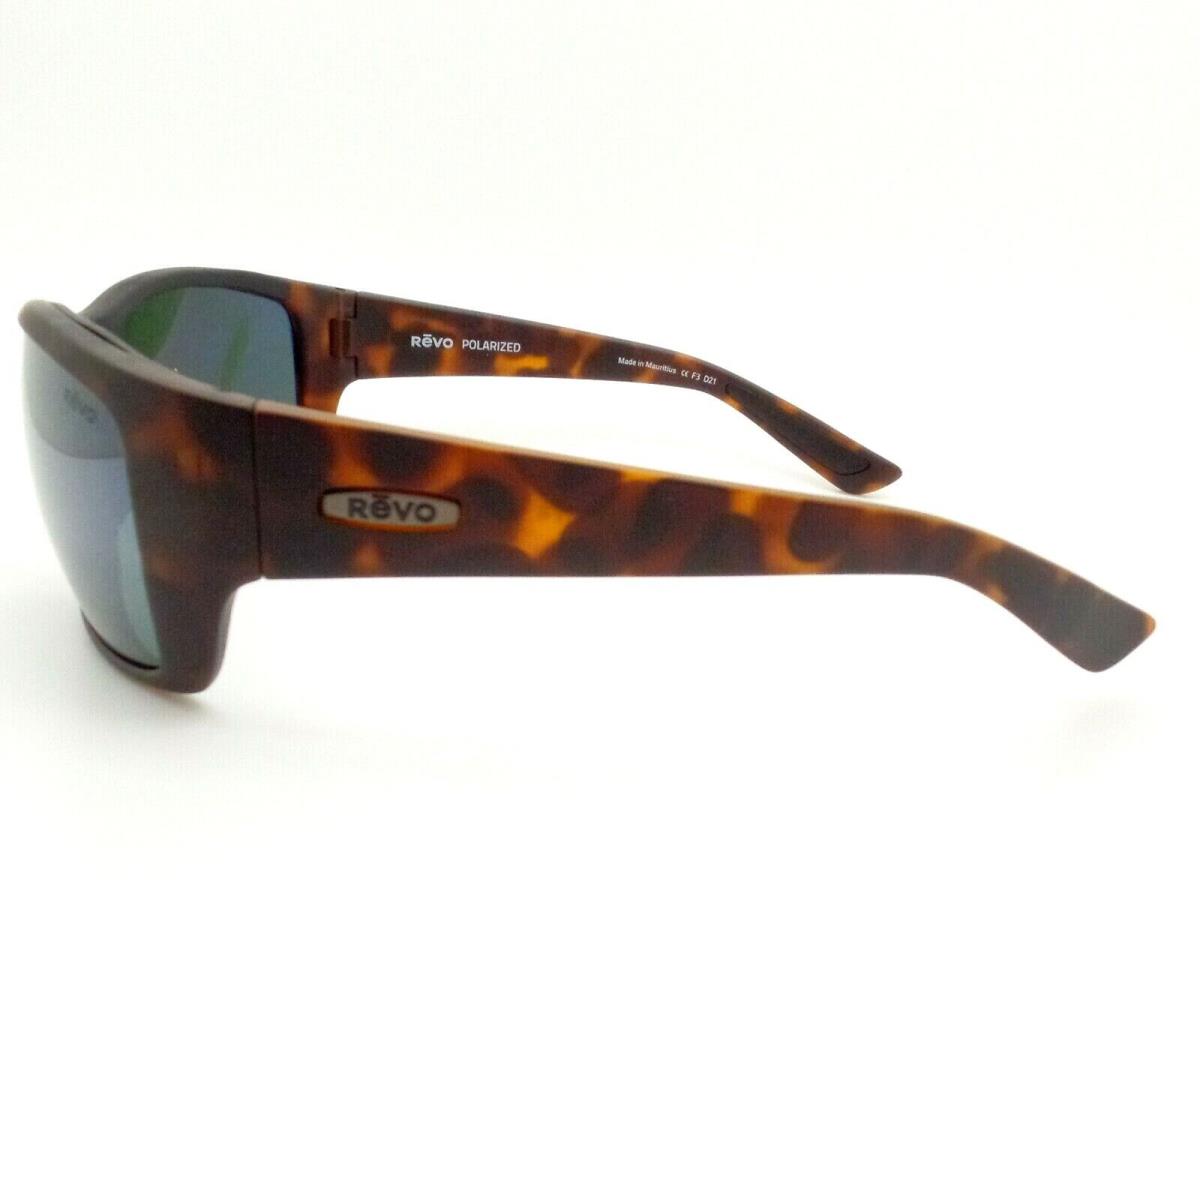 Revo sunglasses Dexter - Tortoise Matte Frame, Smoky Green Lens